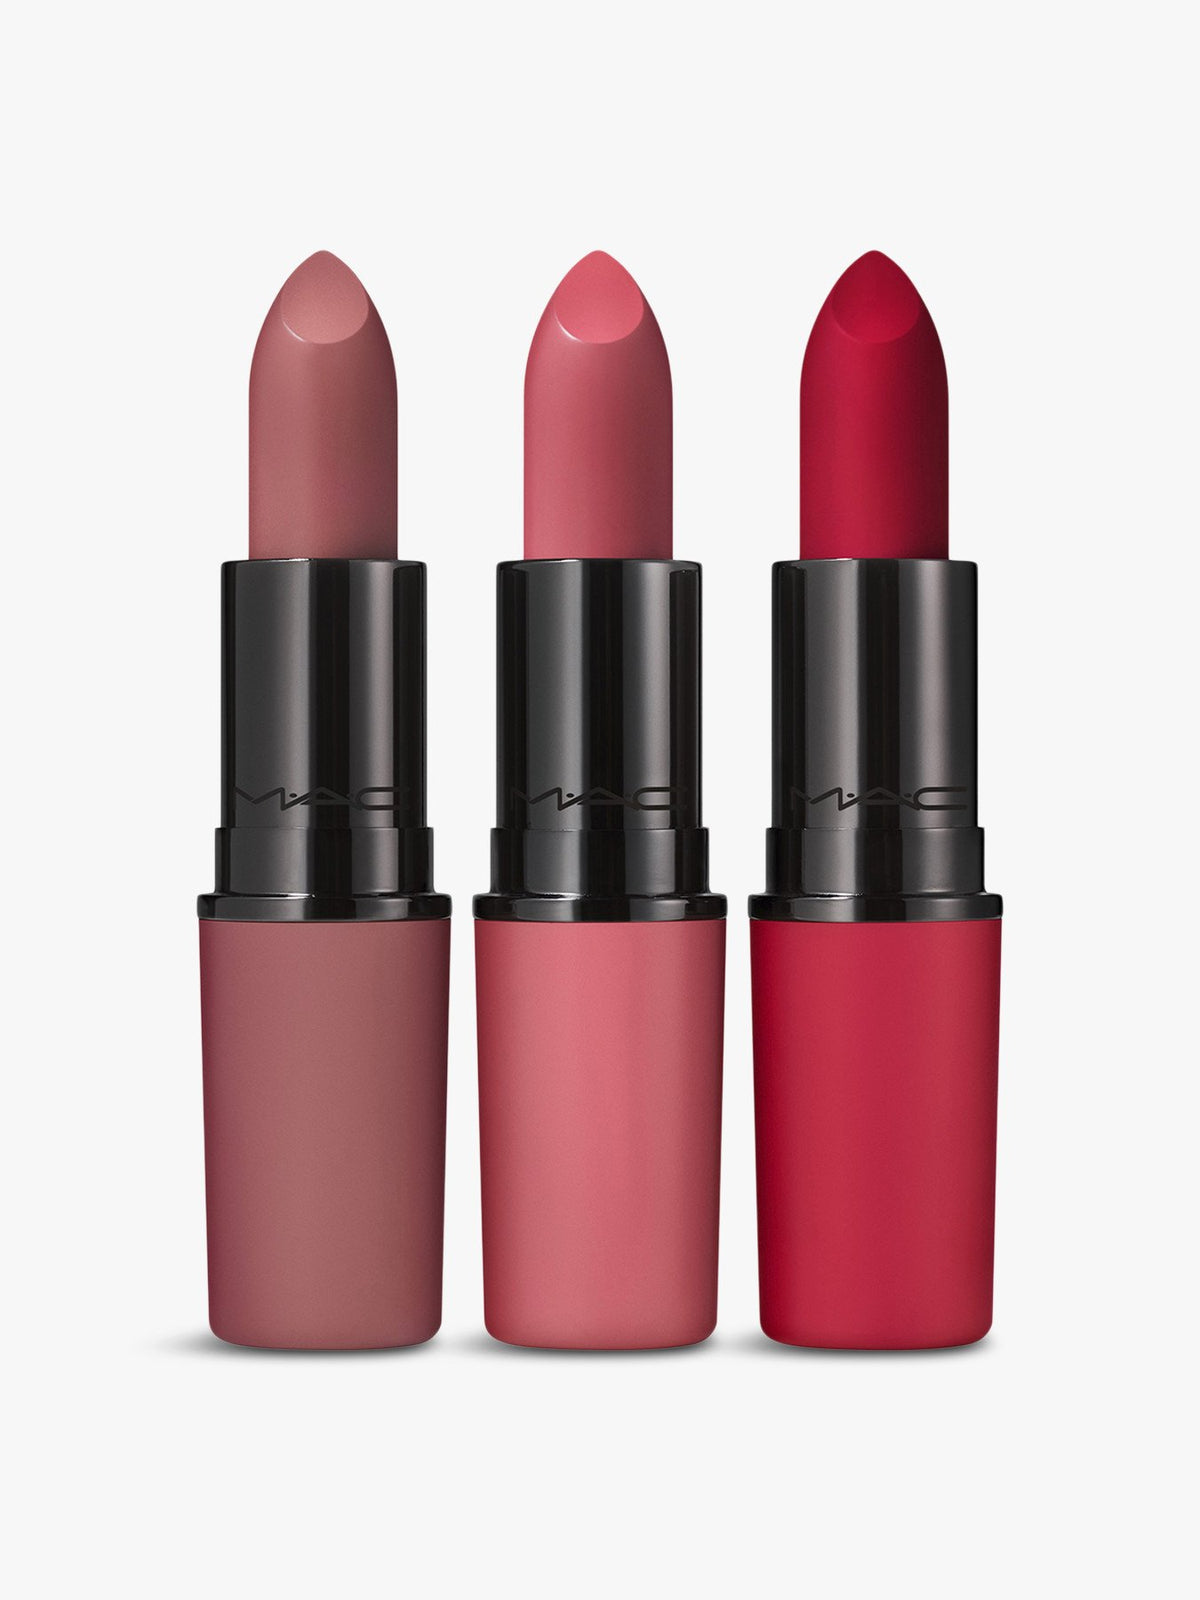 Mac 3Piece Lipstick Set Ruby woo Lipstick+Mehr Matte lipstick+Whirl Matte Lipstick